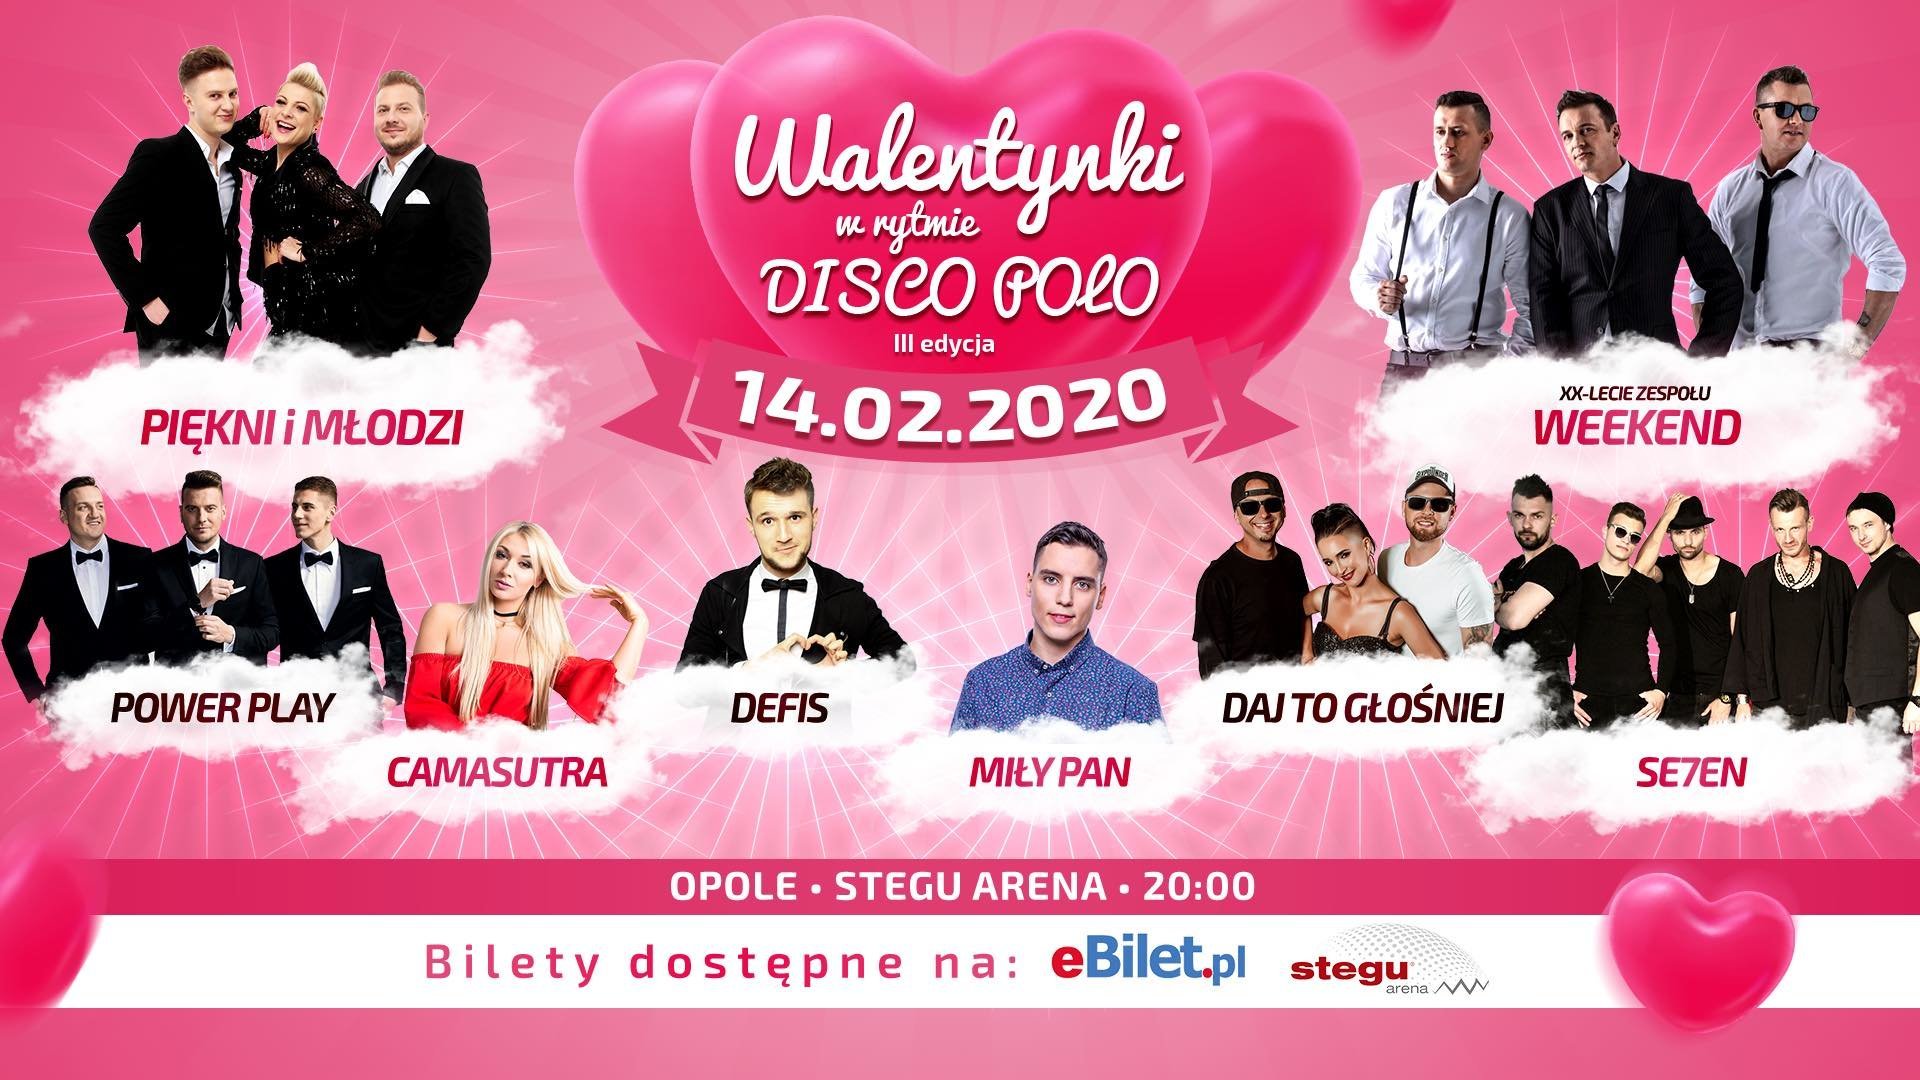 Walentynki w rytmie Disco Polo 2020 - Opole! Transmisja TV & Online - Bilety - Lista wykonawców